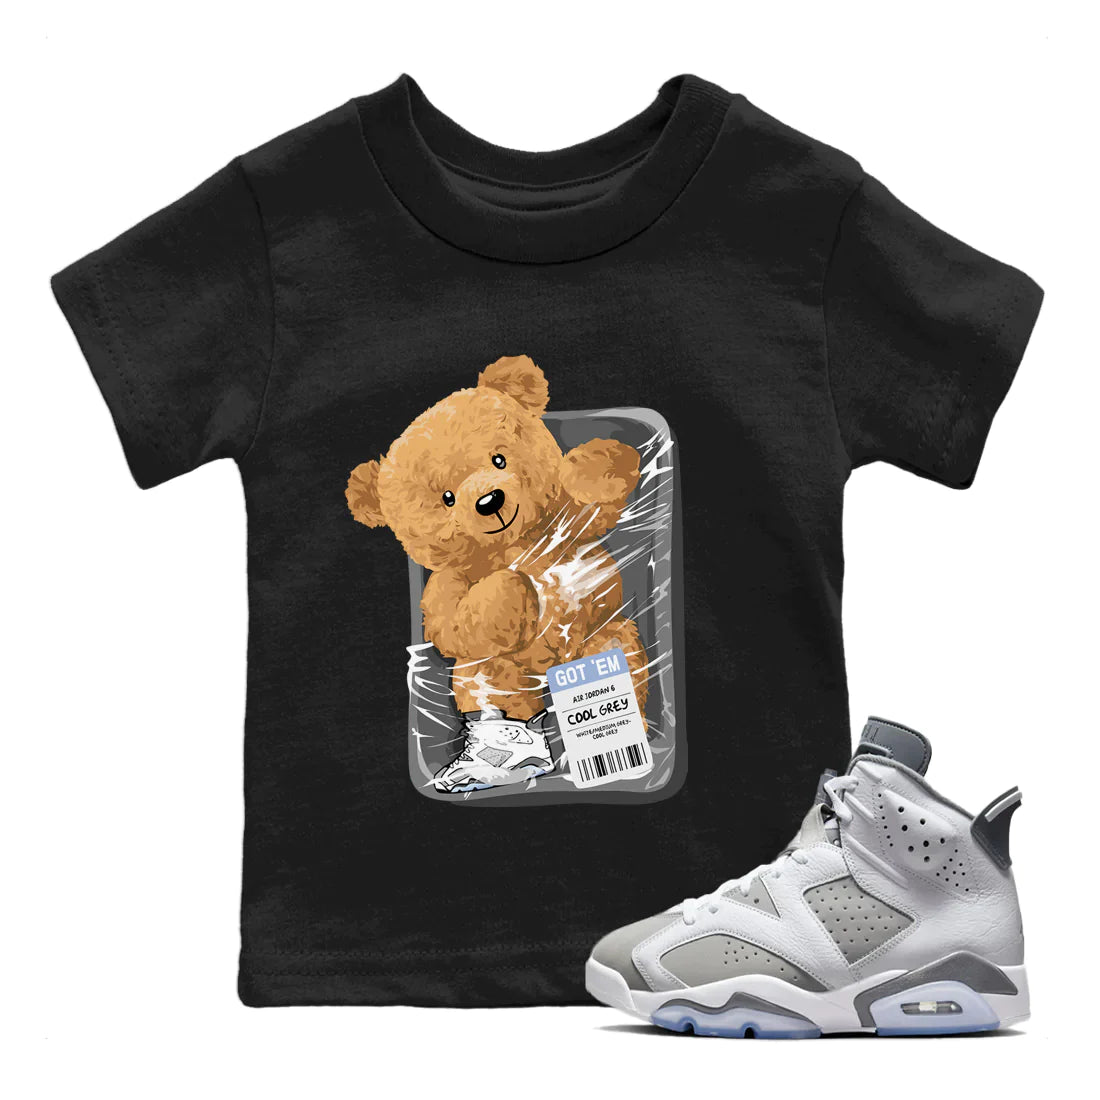 Jordan 6 Cool Grey Sneaker Match Tees Packaged Bear Sneaker Tees Jordan 6 Cool Grey Sneaker Release Tees Kids Shirts